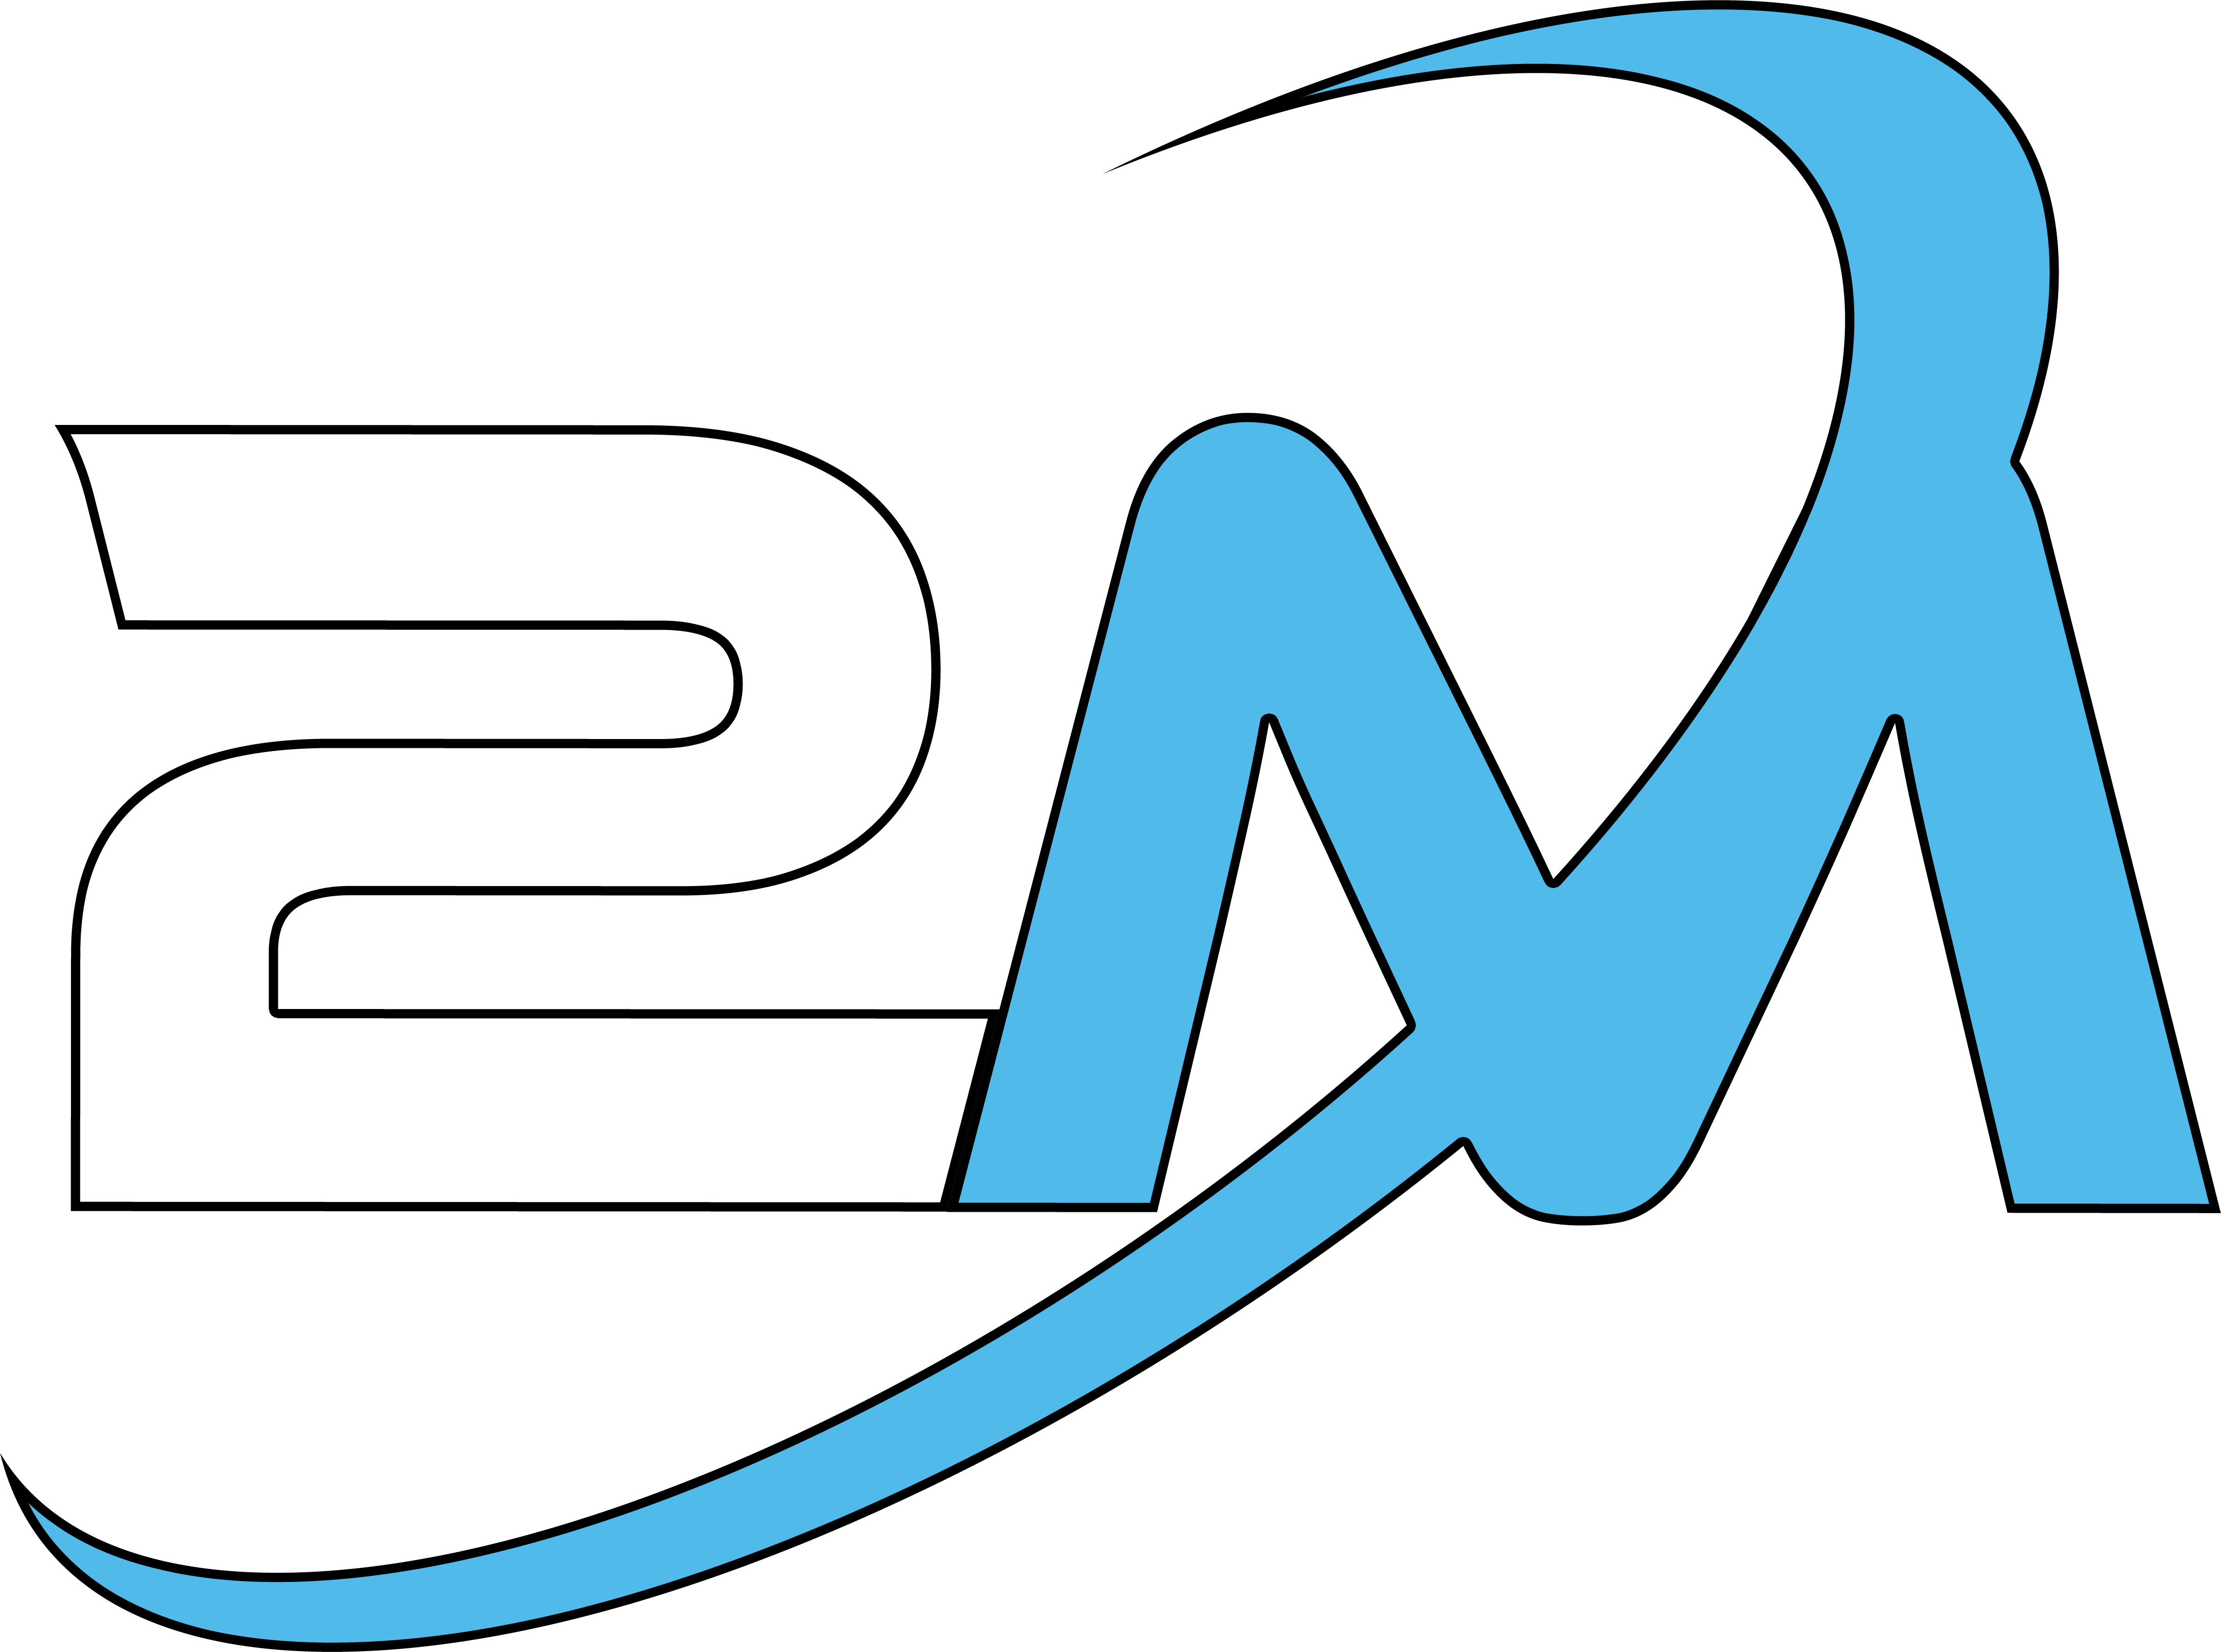 Logo 2M